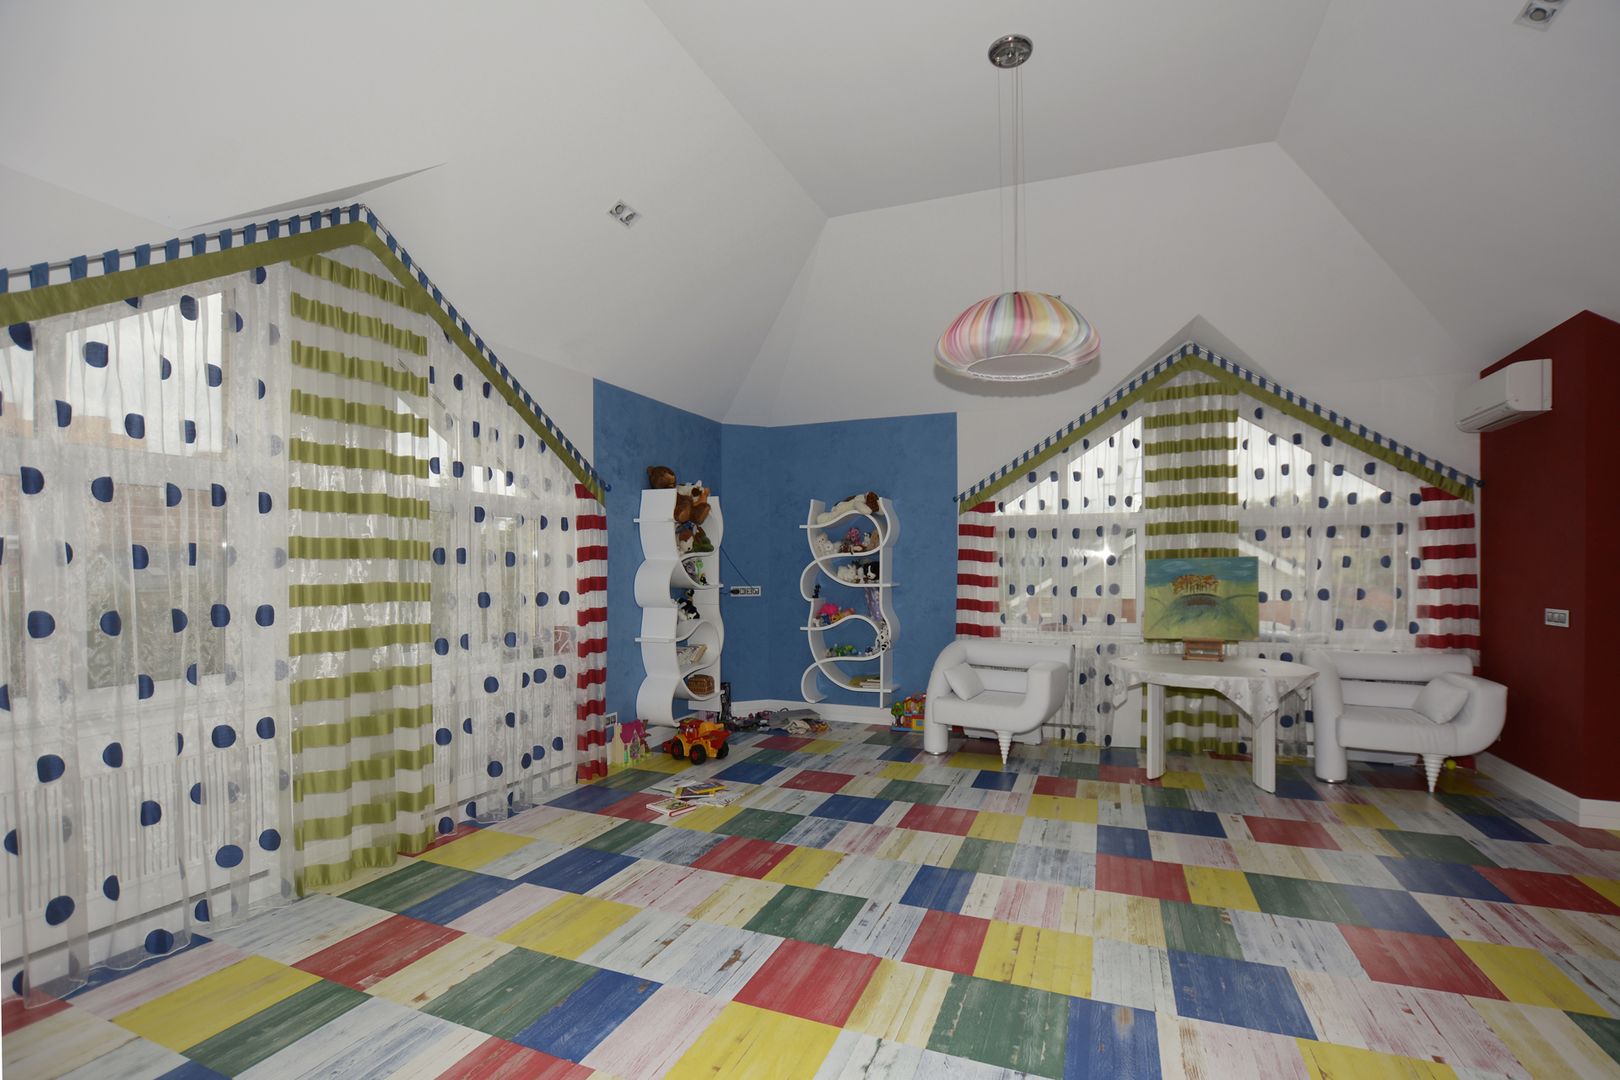 Дизайн детской игровой комнаты